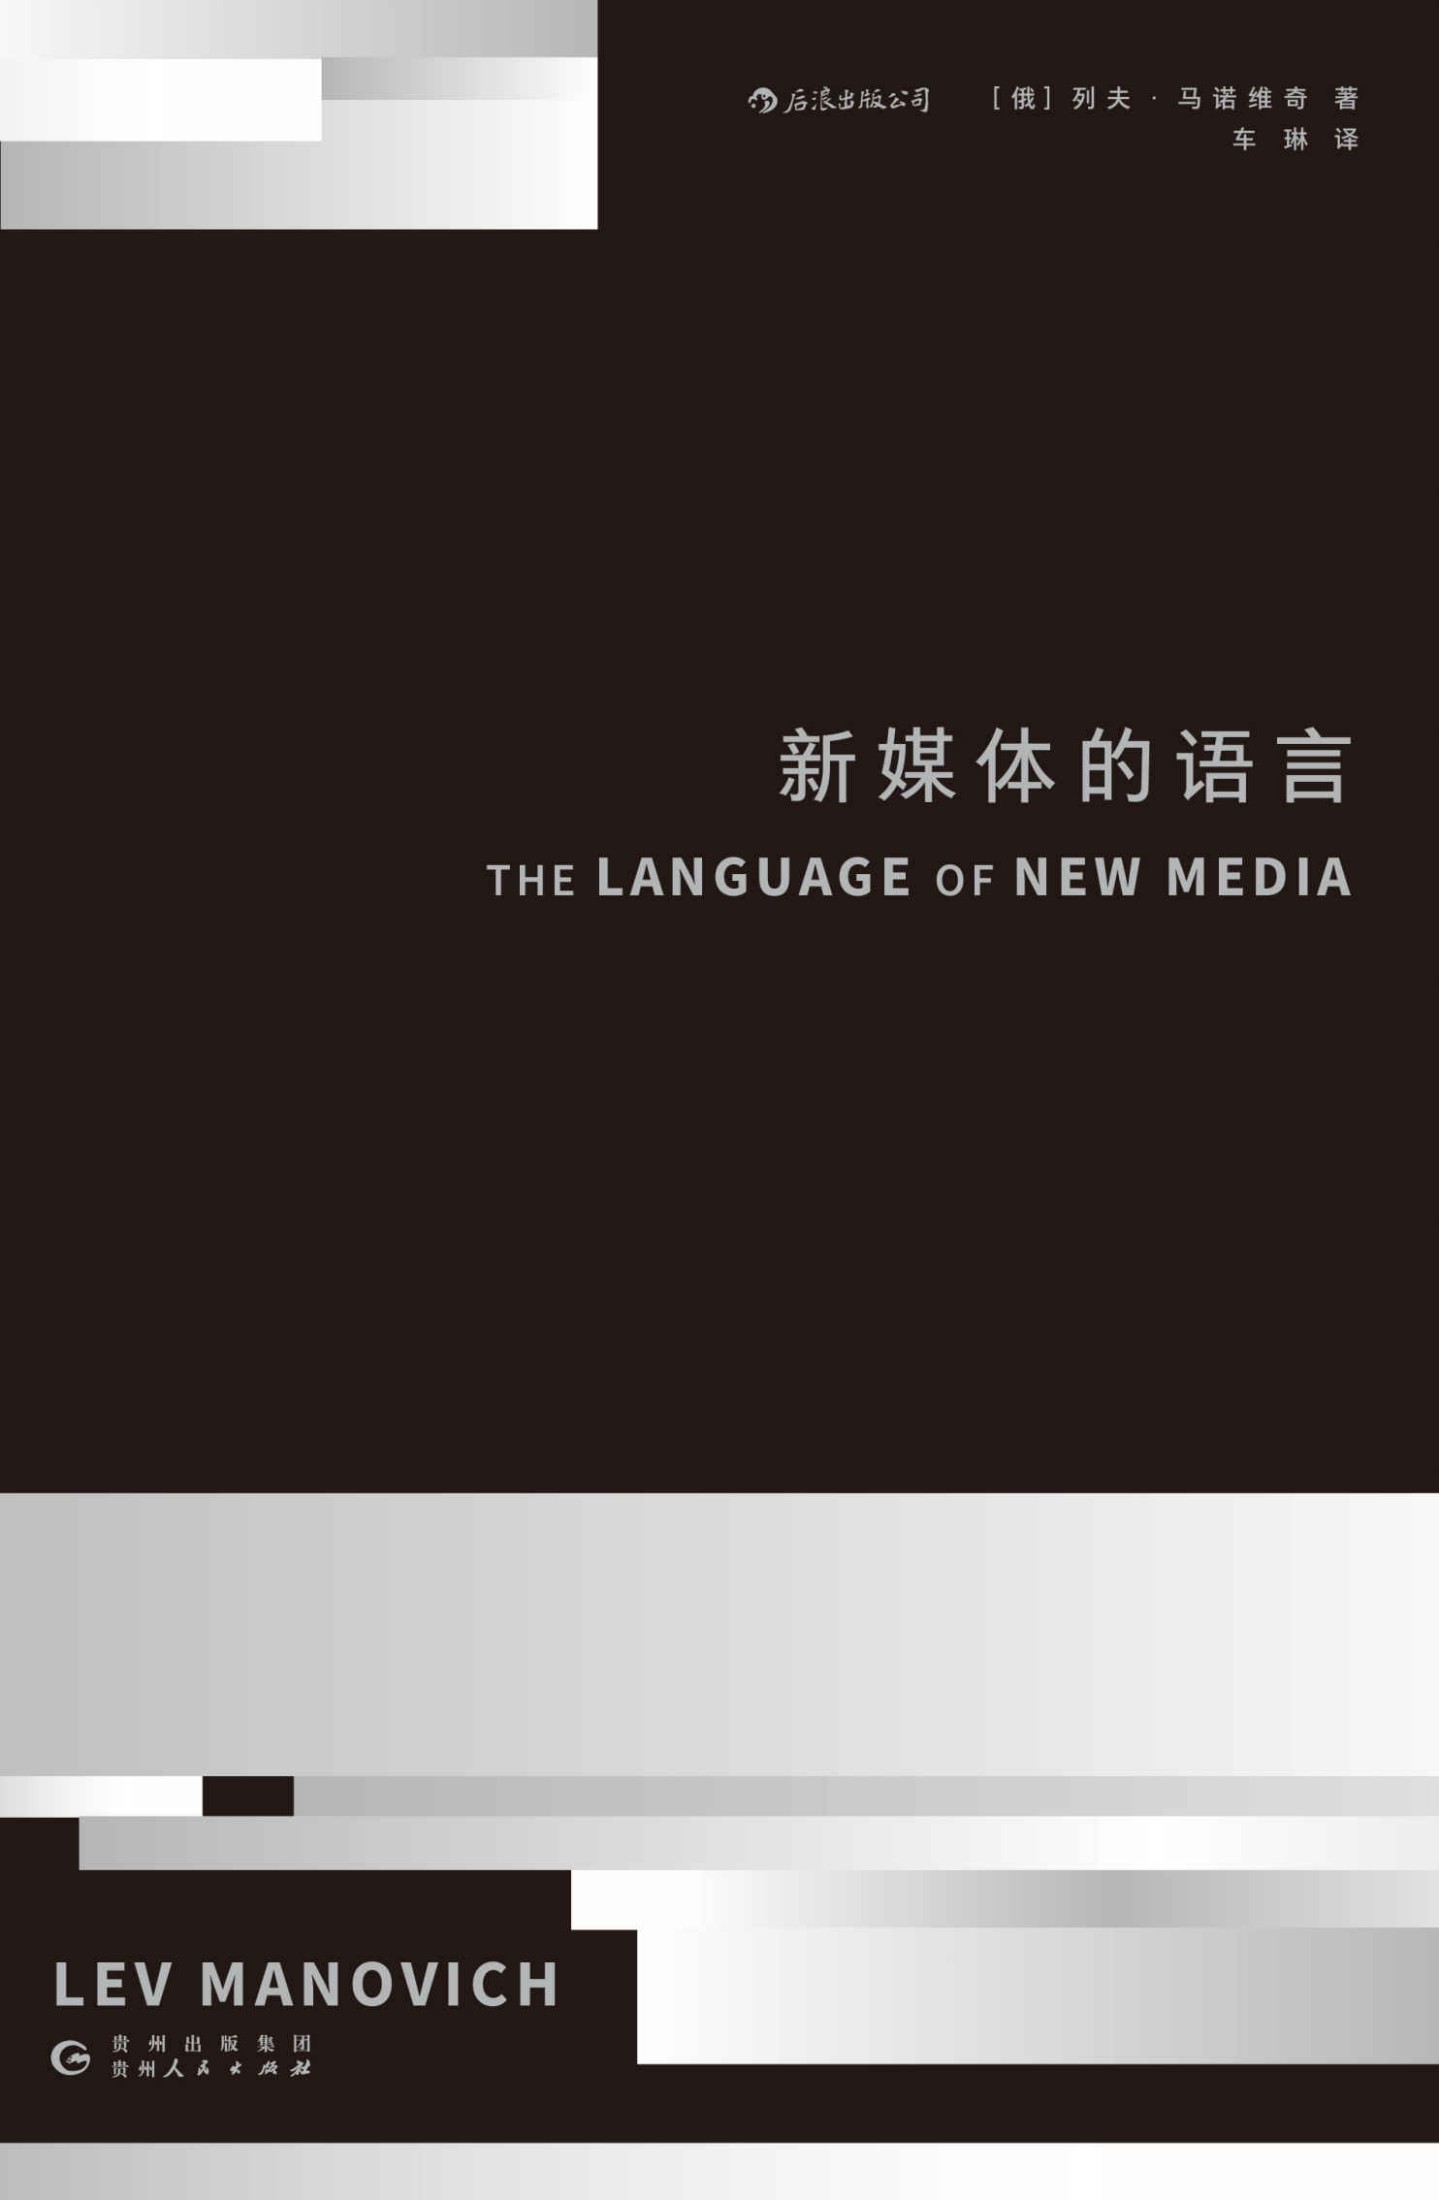 新媒体的语言（麻省理工学院出版社认知突围名著，21世纪数字媒体革命奠基之作！读懂这本书的人，将改变未来世界！）